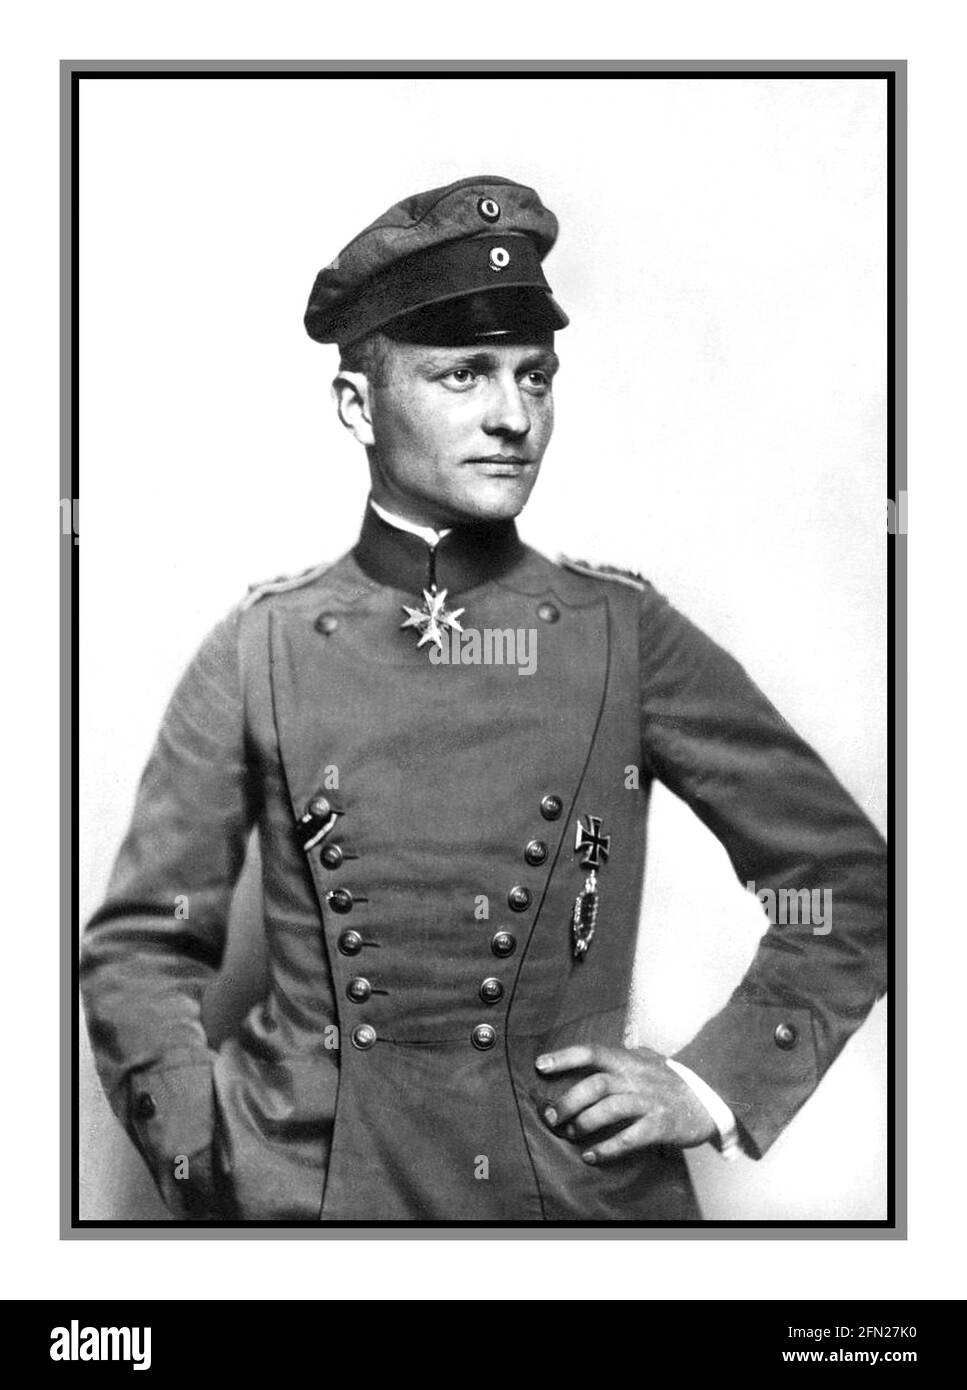 Red BARON ritratto della prima guerra mondiale c1917 di Manfred Albrecht Freiherr von Richthofen, conosciuto in inglese come Baron von Richthofen, E il più famoso come il "Red Baron", è stato un pilota da combattimento con l'Aeronautica tedesca durante la prima guerra mondiale. È considerato l'asso degli assi della guerra, che è stato ufficialmente accreditato con 80 vittorie di combattimento aereo. Richthofen indossa il pour le Mérite, il 'Blue Max', il più alto ordine militare della Prussia, in questo ritratto ufficiale, c.. 1917. Foto Stock